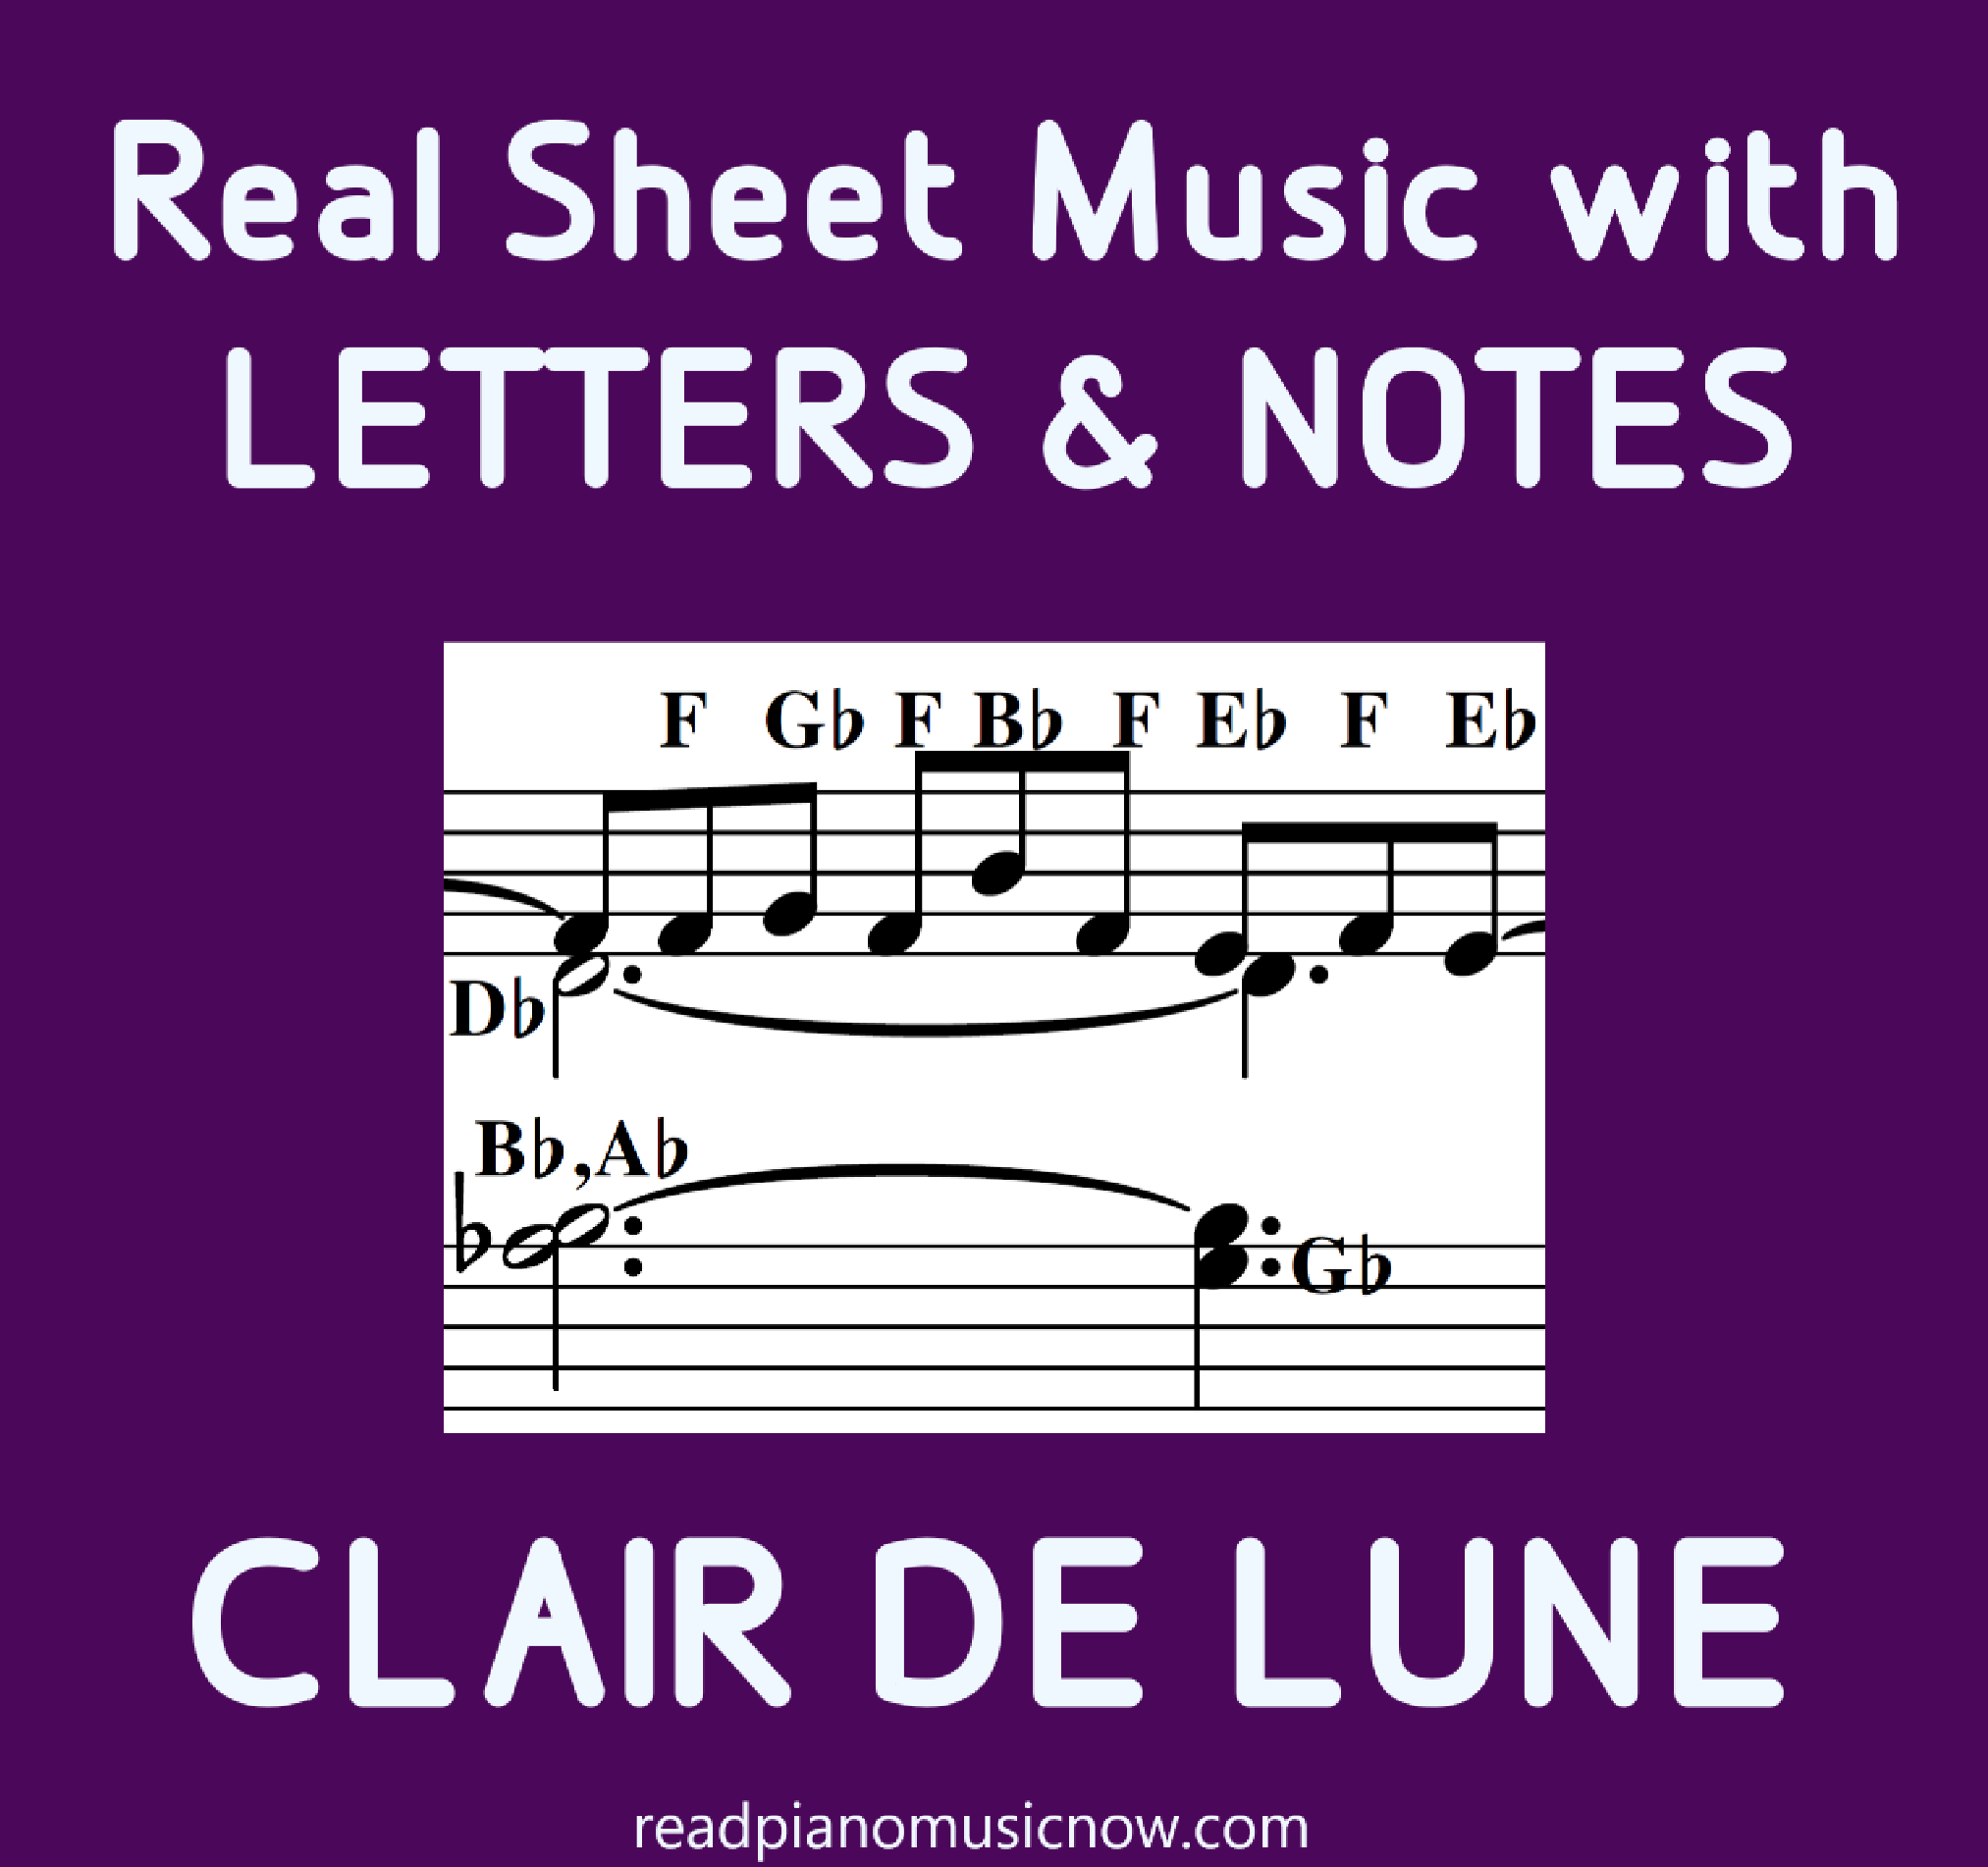 Clair de Lune harfli notalar - ürün resmi.